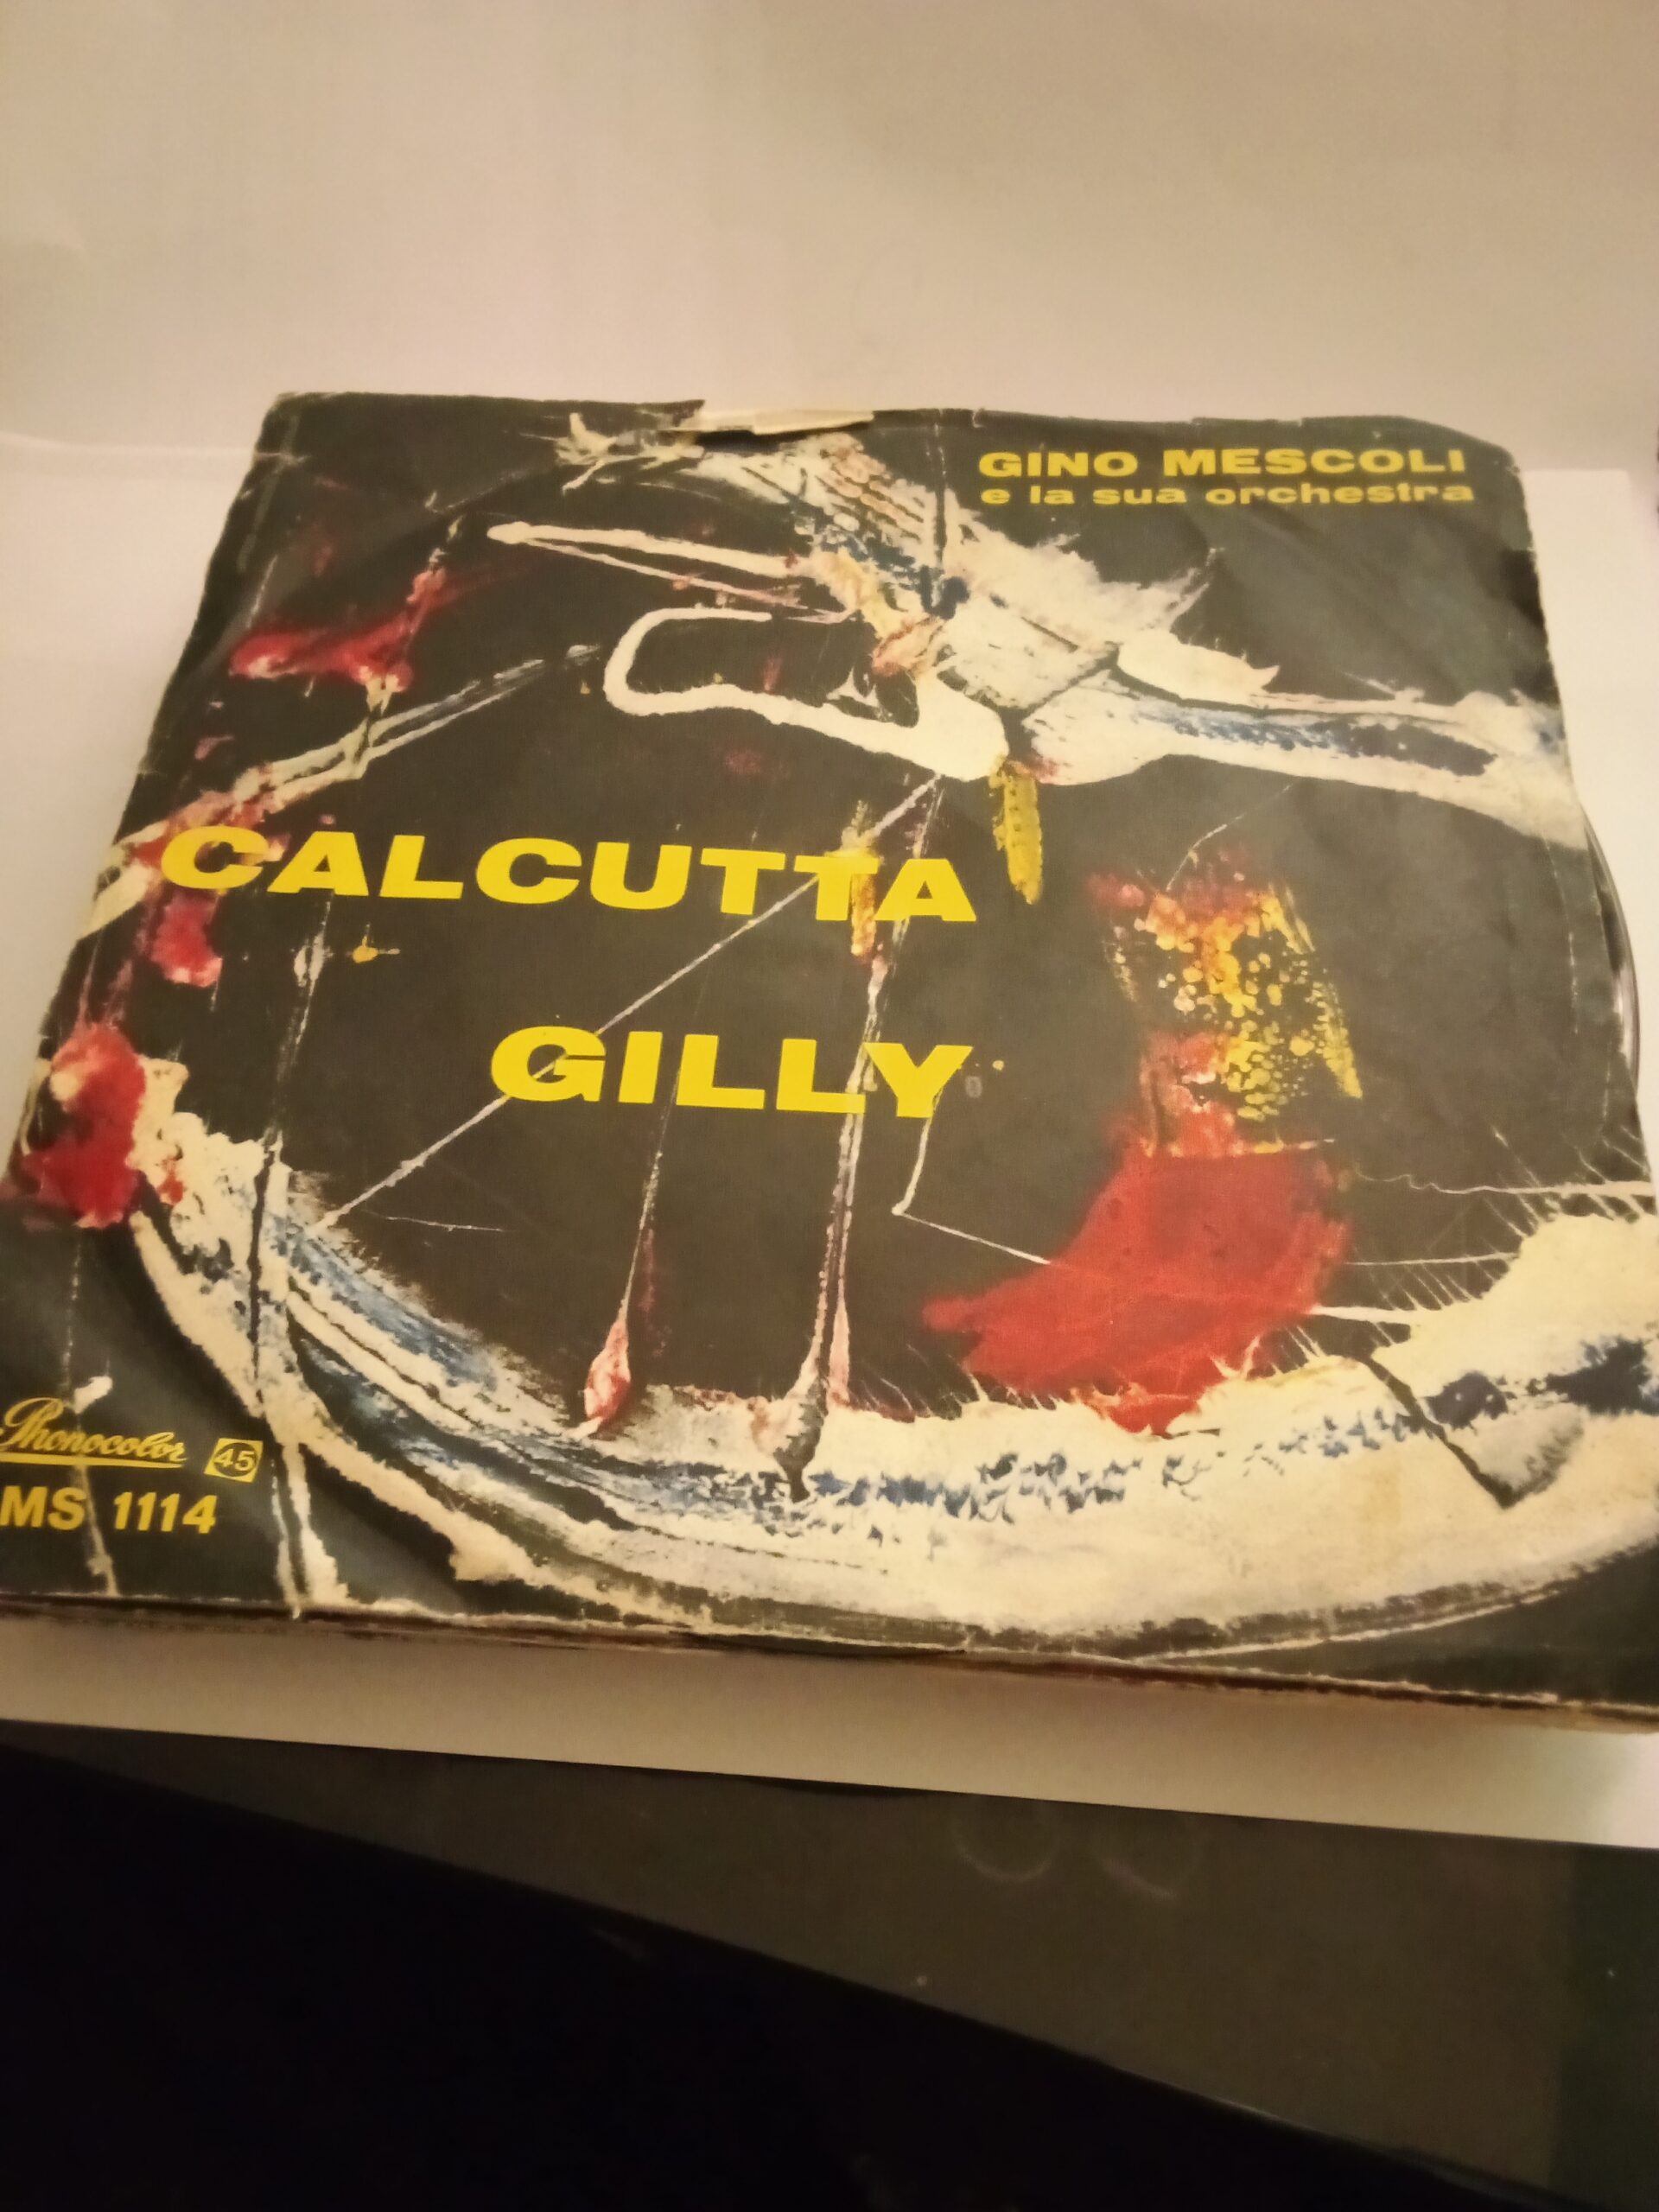 A 66] Disco vinile 45 giri – Gino Mescoli – Calcutta – Gilly – Lo